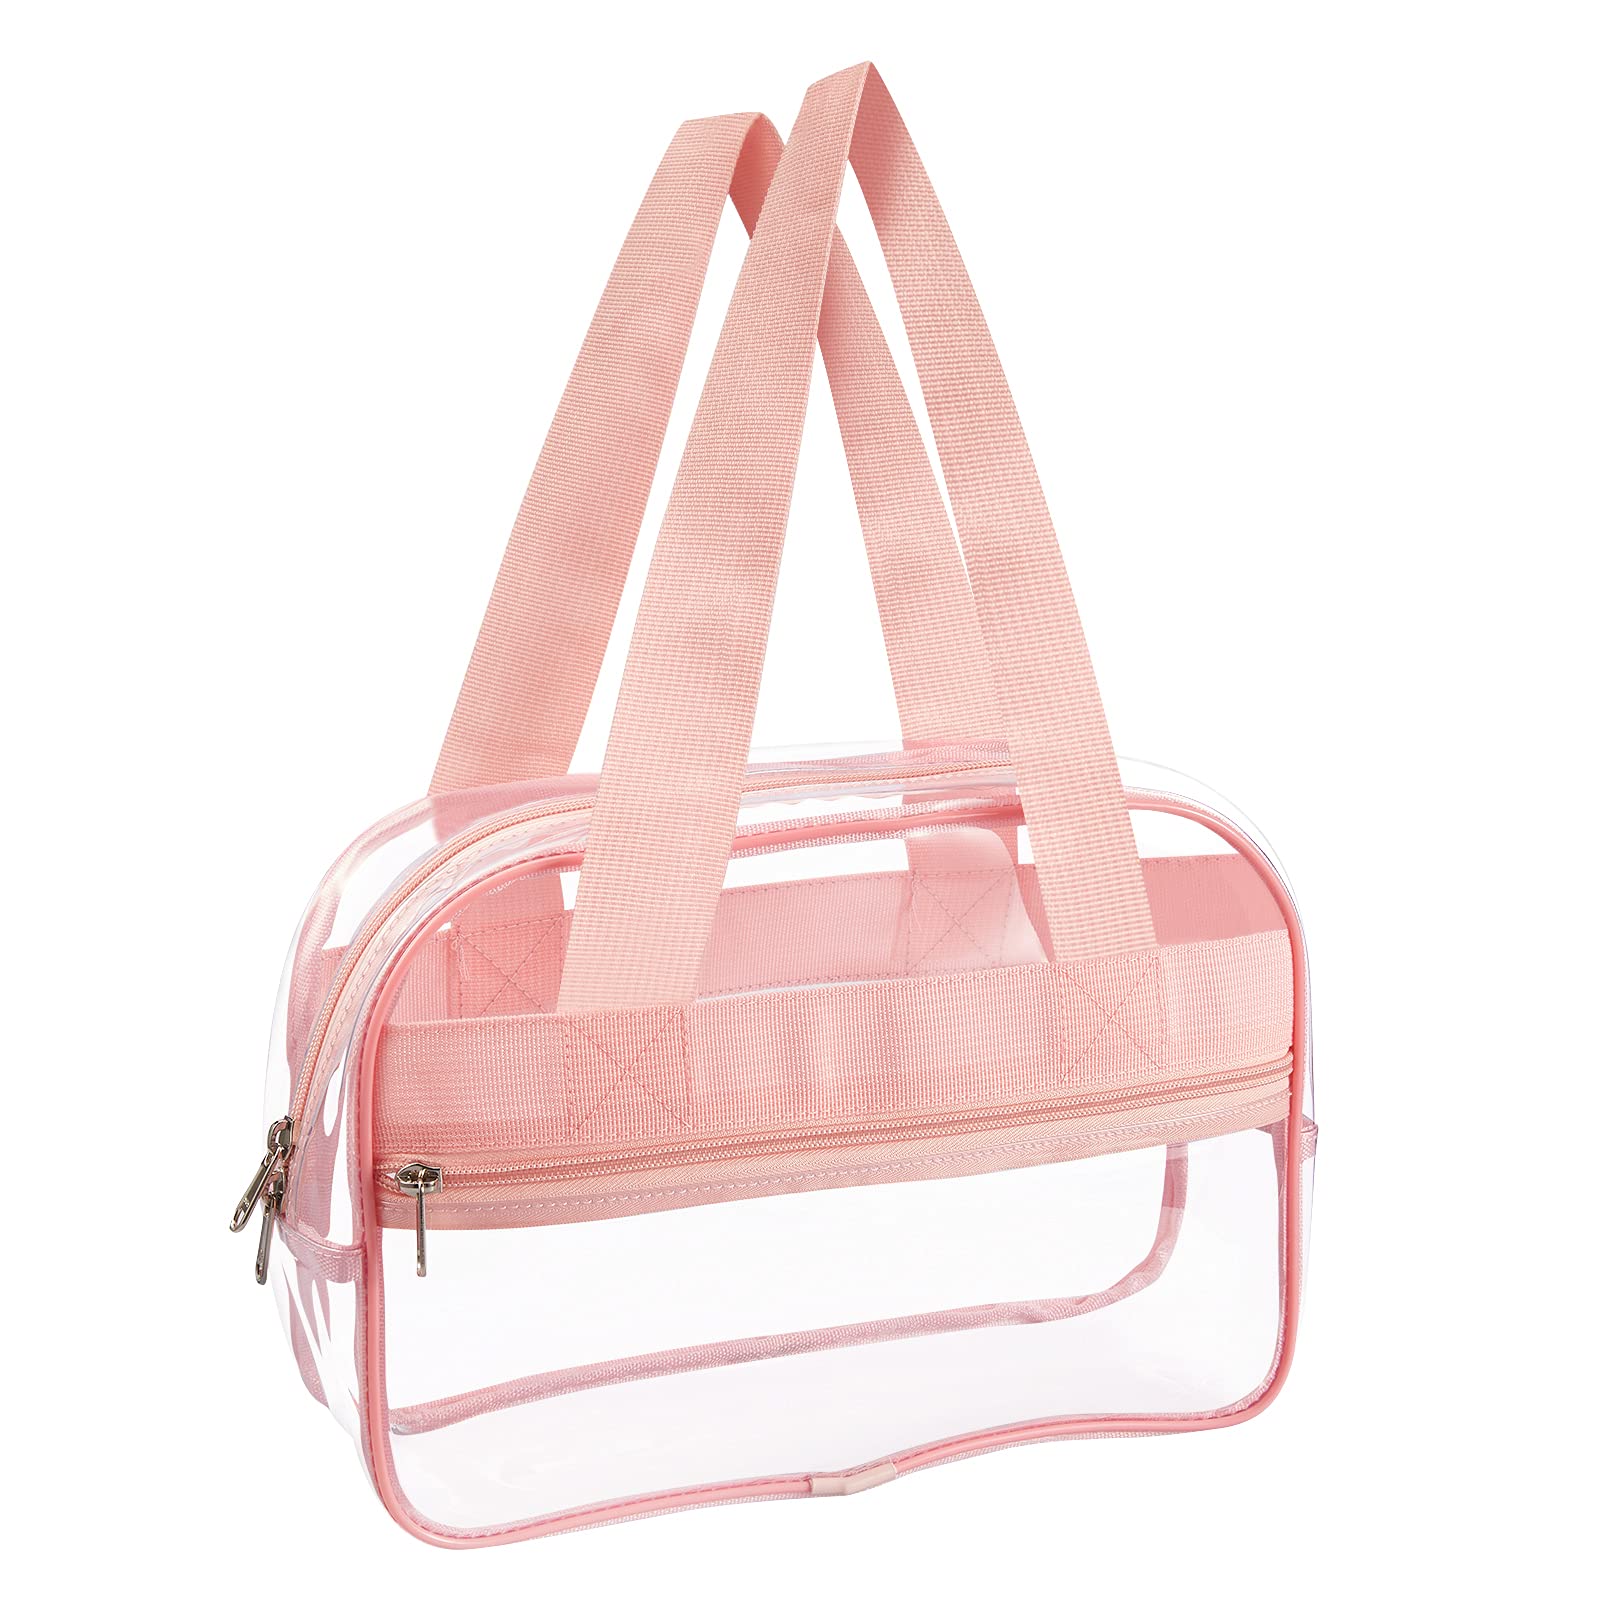  TOURDREAM Clear Bag Transparent Cover Pouch Compatible